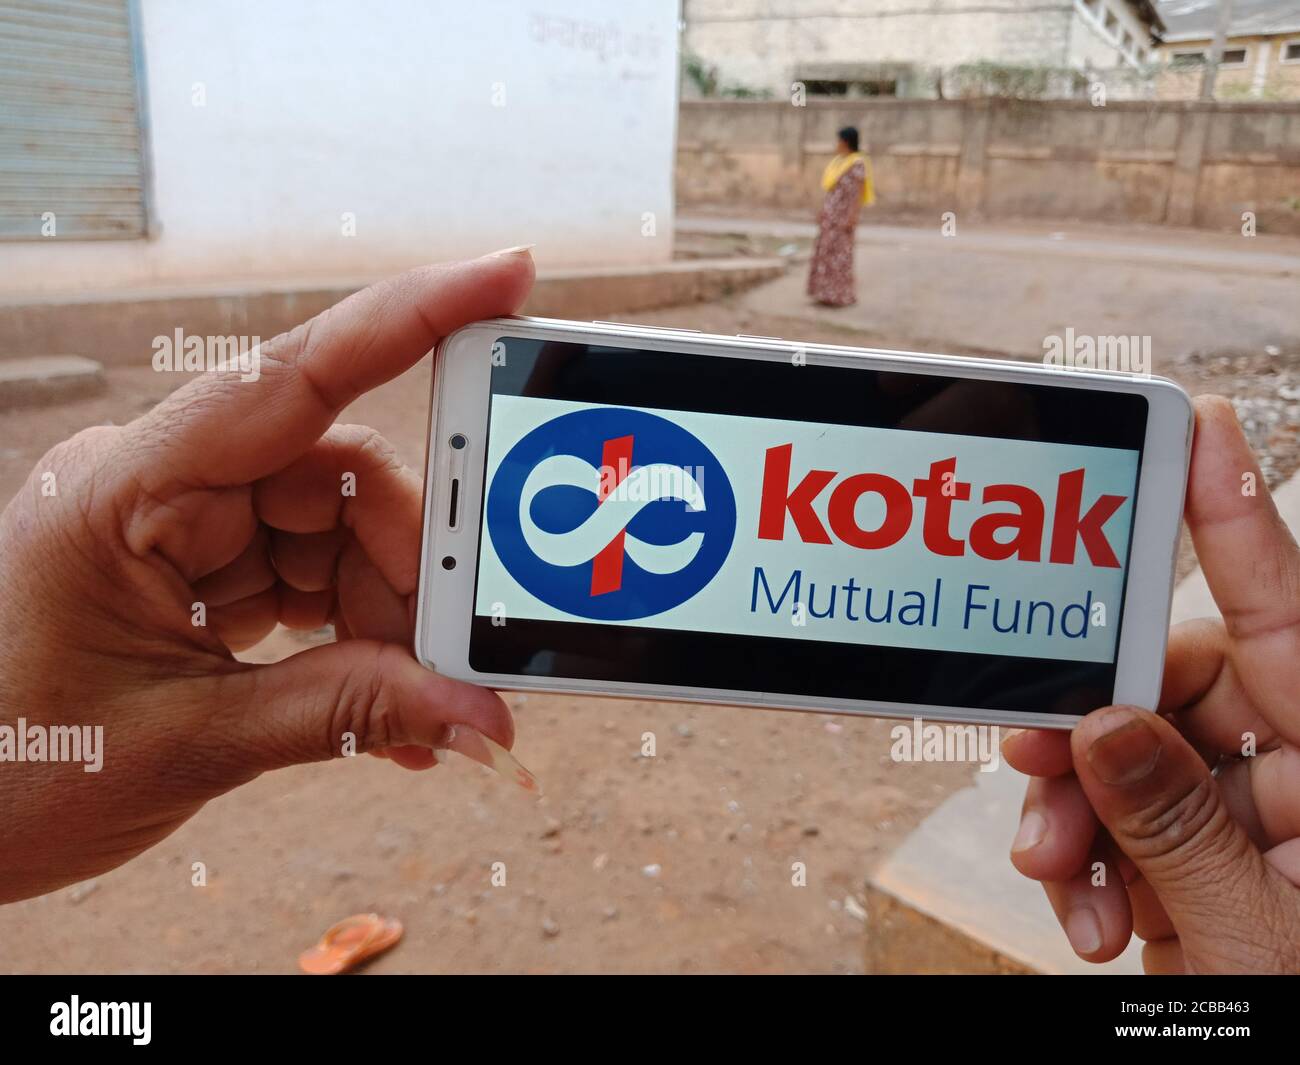 DISTRETTO KATNI, INDIA - 02 GIUGNO 2020: Una donna indiana che detiene smartphone con visualizzazione del logo Kotak Mutual Fund sullo schermo, istruzione bancaria moderna Foto Stock